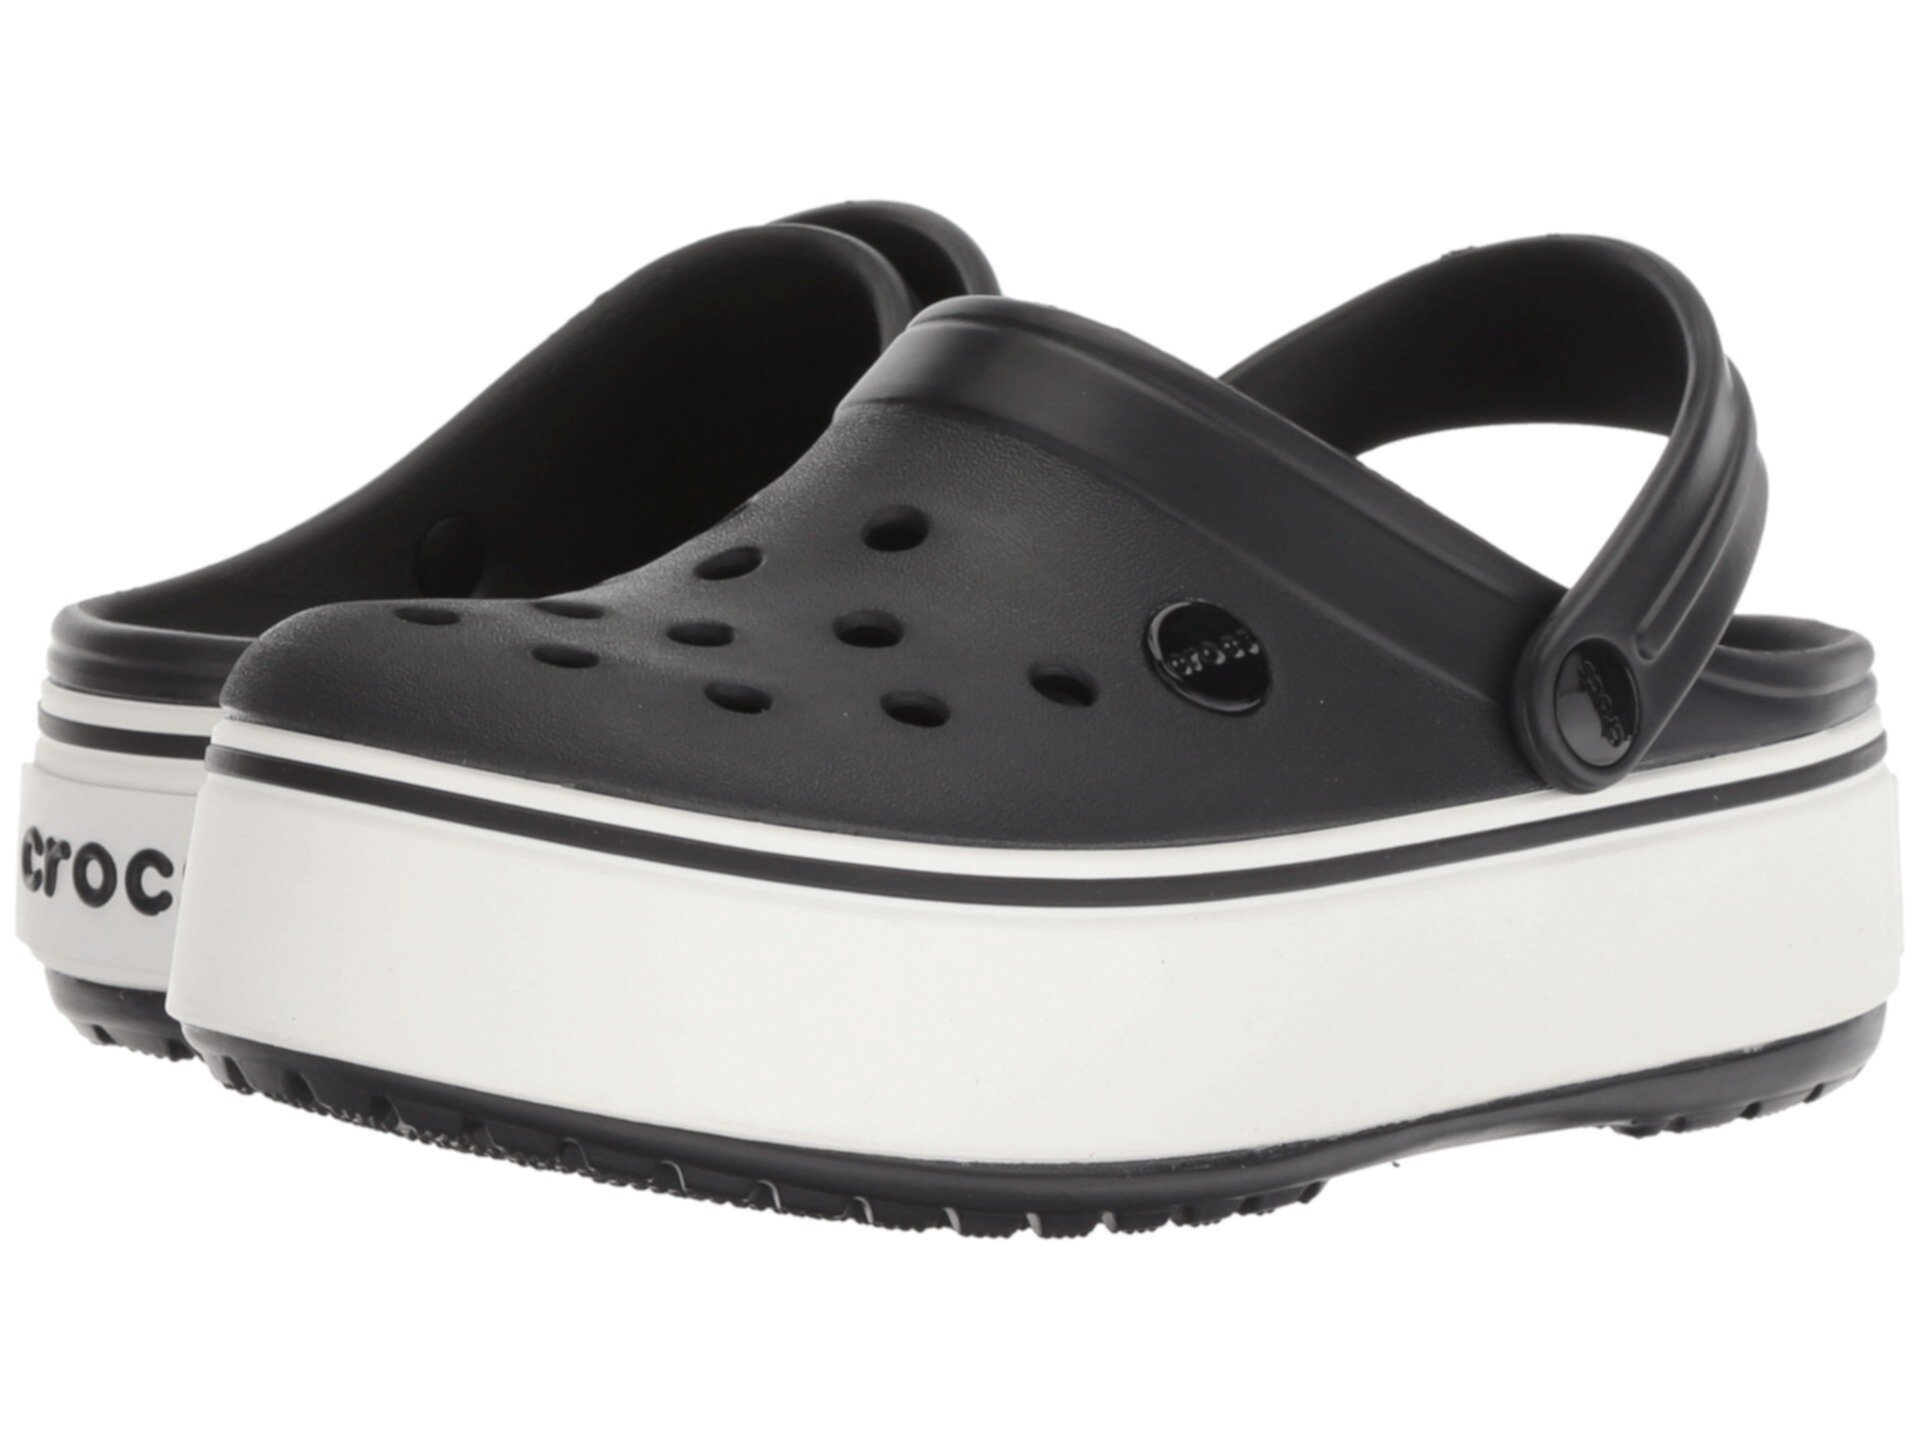 Кроксы на подошве. Crocs Crocband platform Clog. Crocs Crocband™ platform Clog (черные). Crocs Crocband Clog White. Crocs Crocband Clog Black.